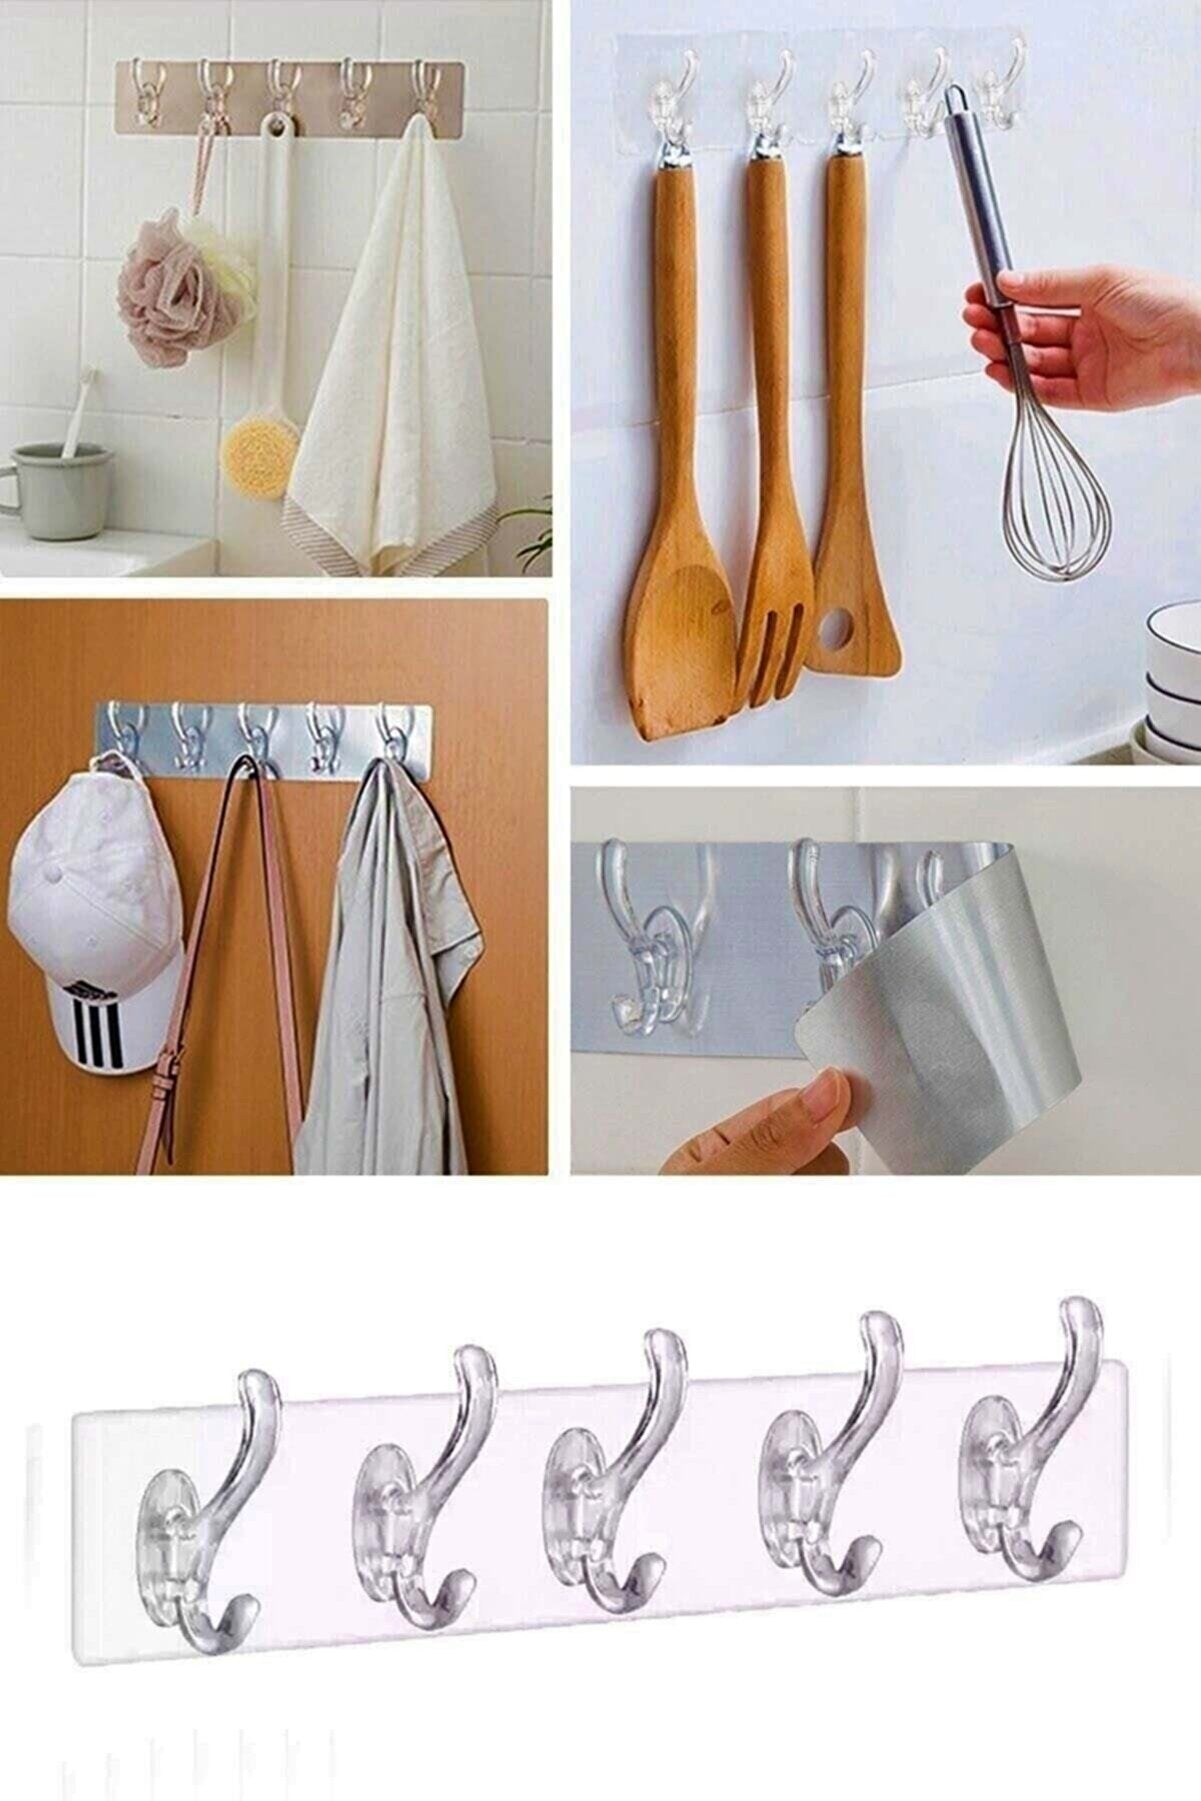 Şifa-iNur Waterproof Silicone 5 Piece Adhesive Transparent Wall Hanger Bathroom Kitchen Organizer Hanger